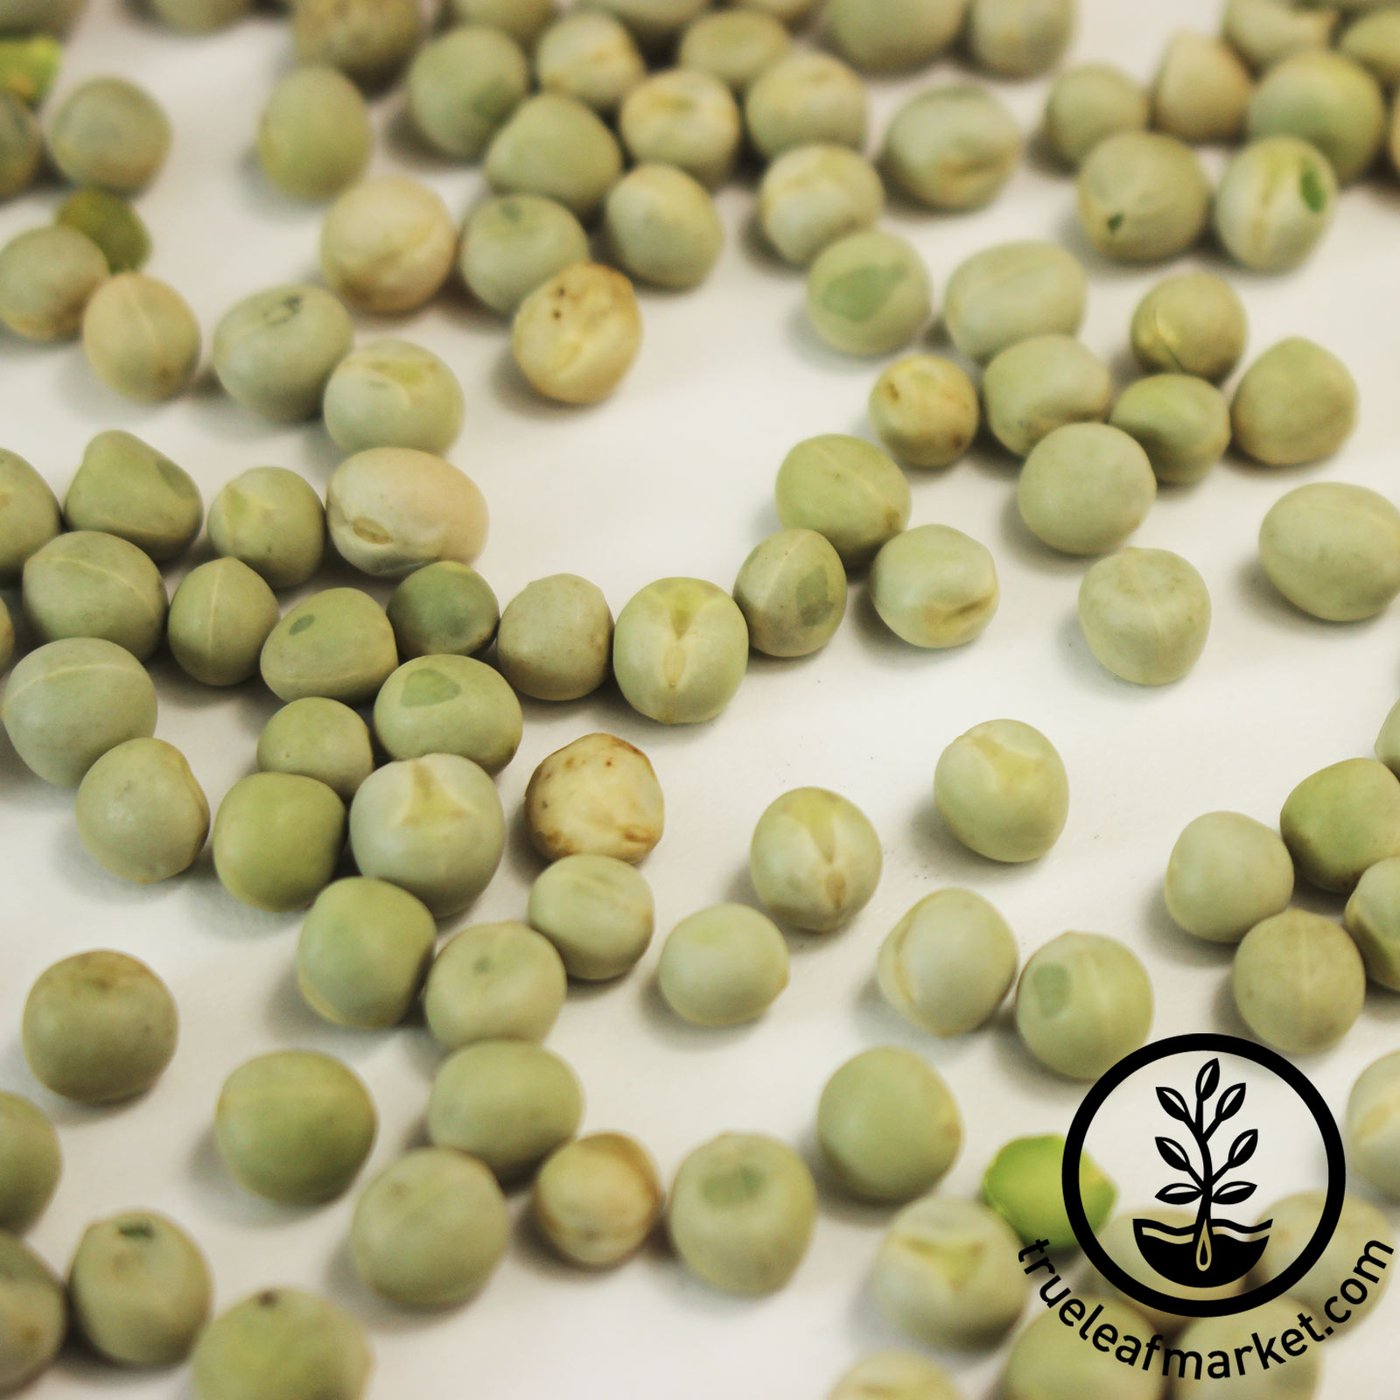 Organic Pea Seed | Pea Shoots | Pea Sprouts